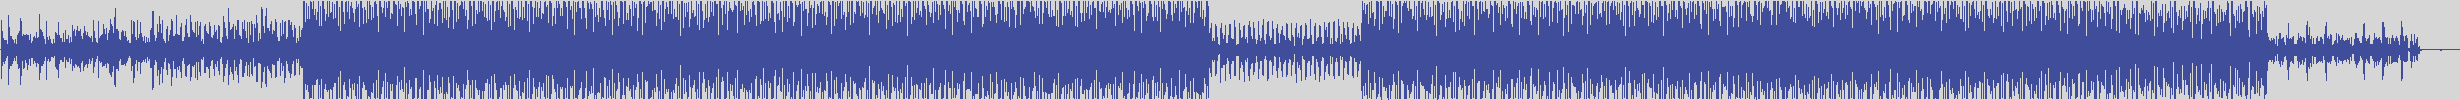 noclouds_chillout [NOC009] Jet Set - Bossacabana [Original Mix] audio wave form